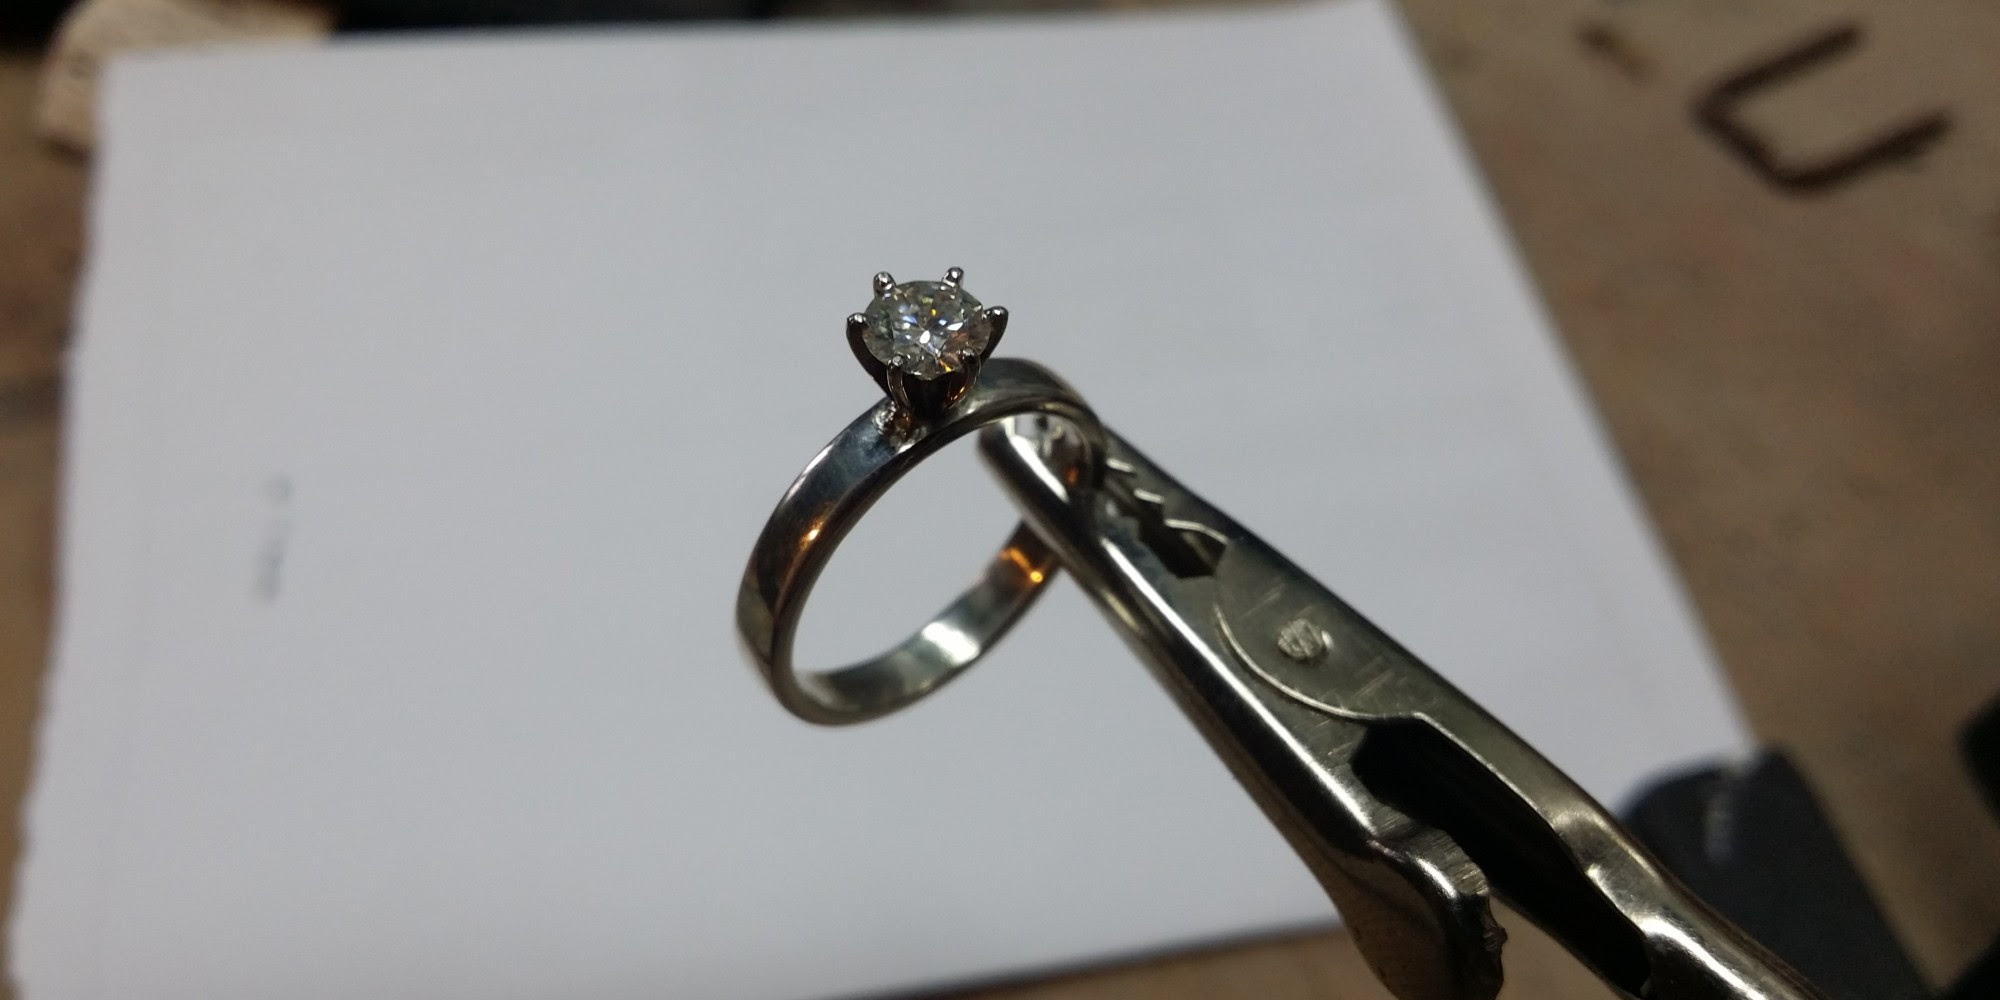 Best Place To Buy Wedding Rings Reddit - Wedding Rings Sets Ideas